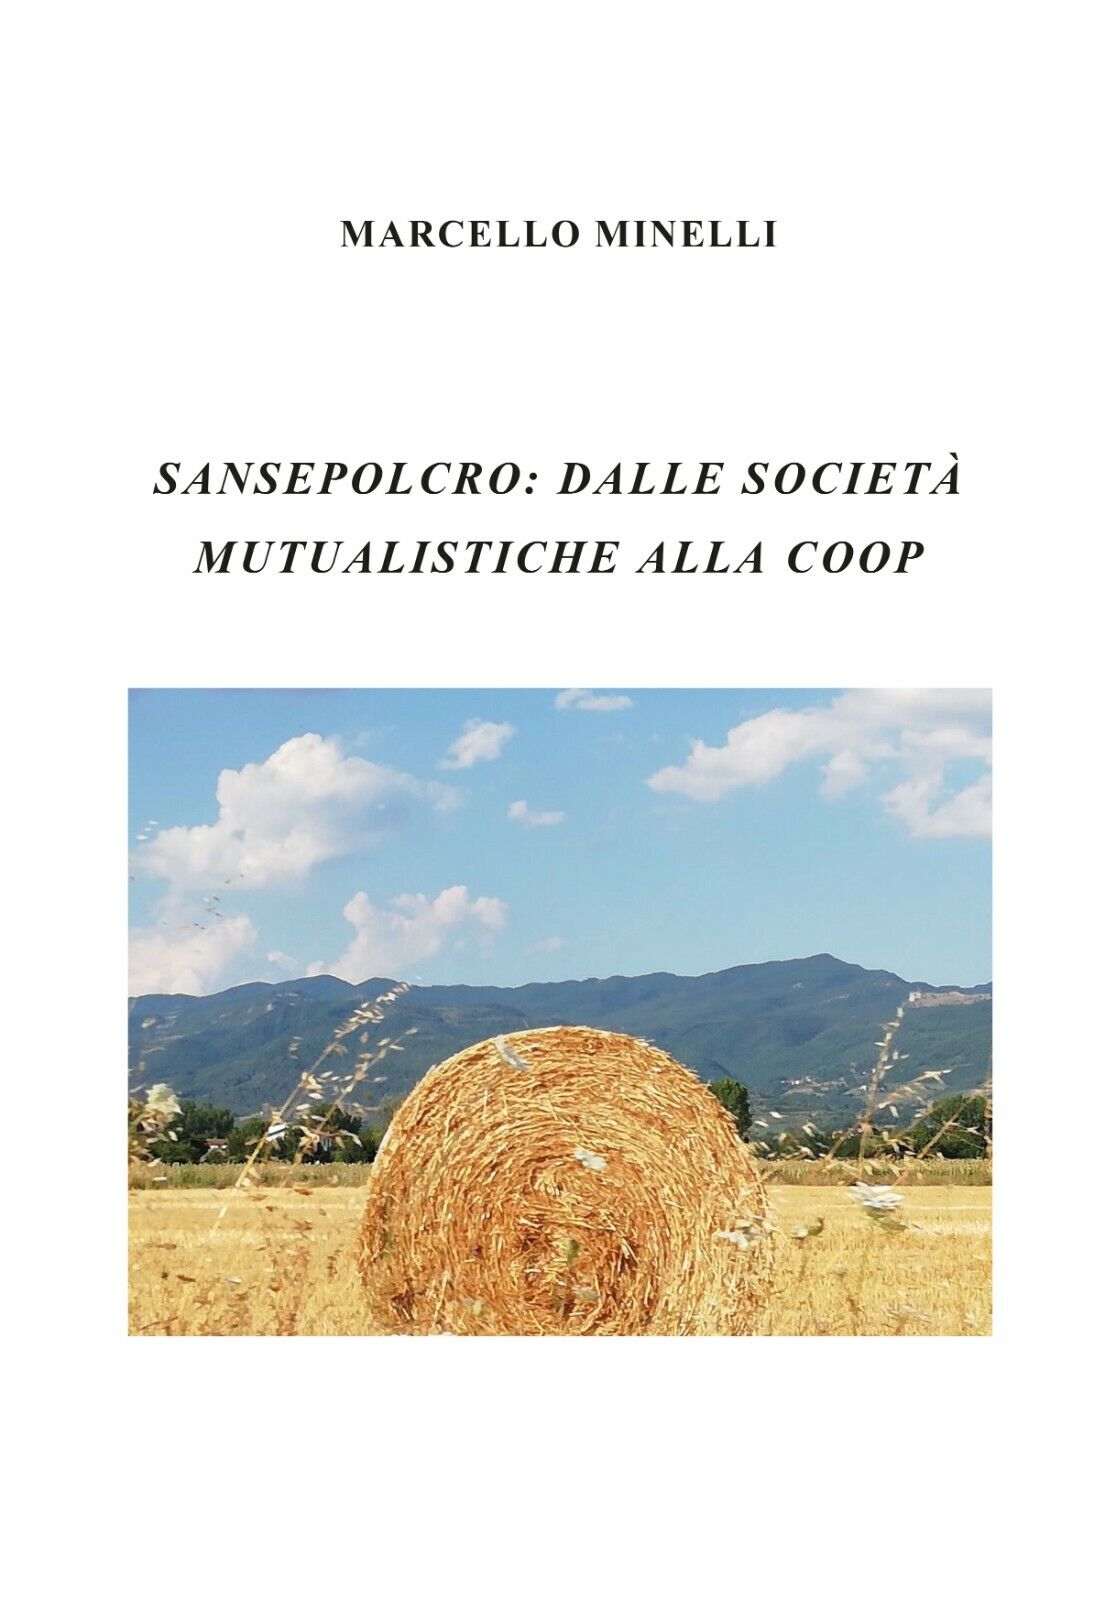 Sansepolcro: Dalle societ? mutualistiche alla coop - Marcello Minelli - P